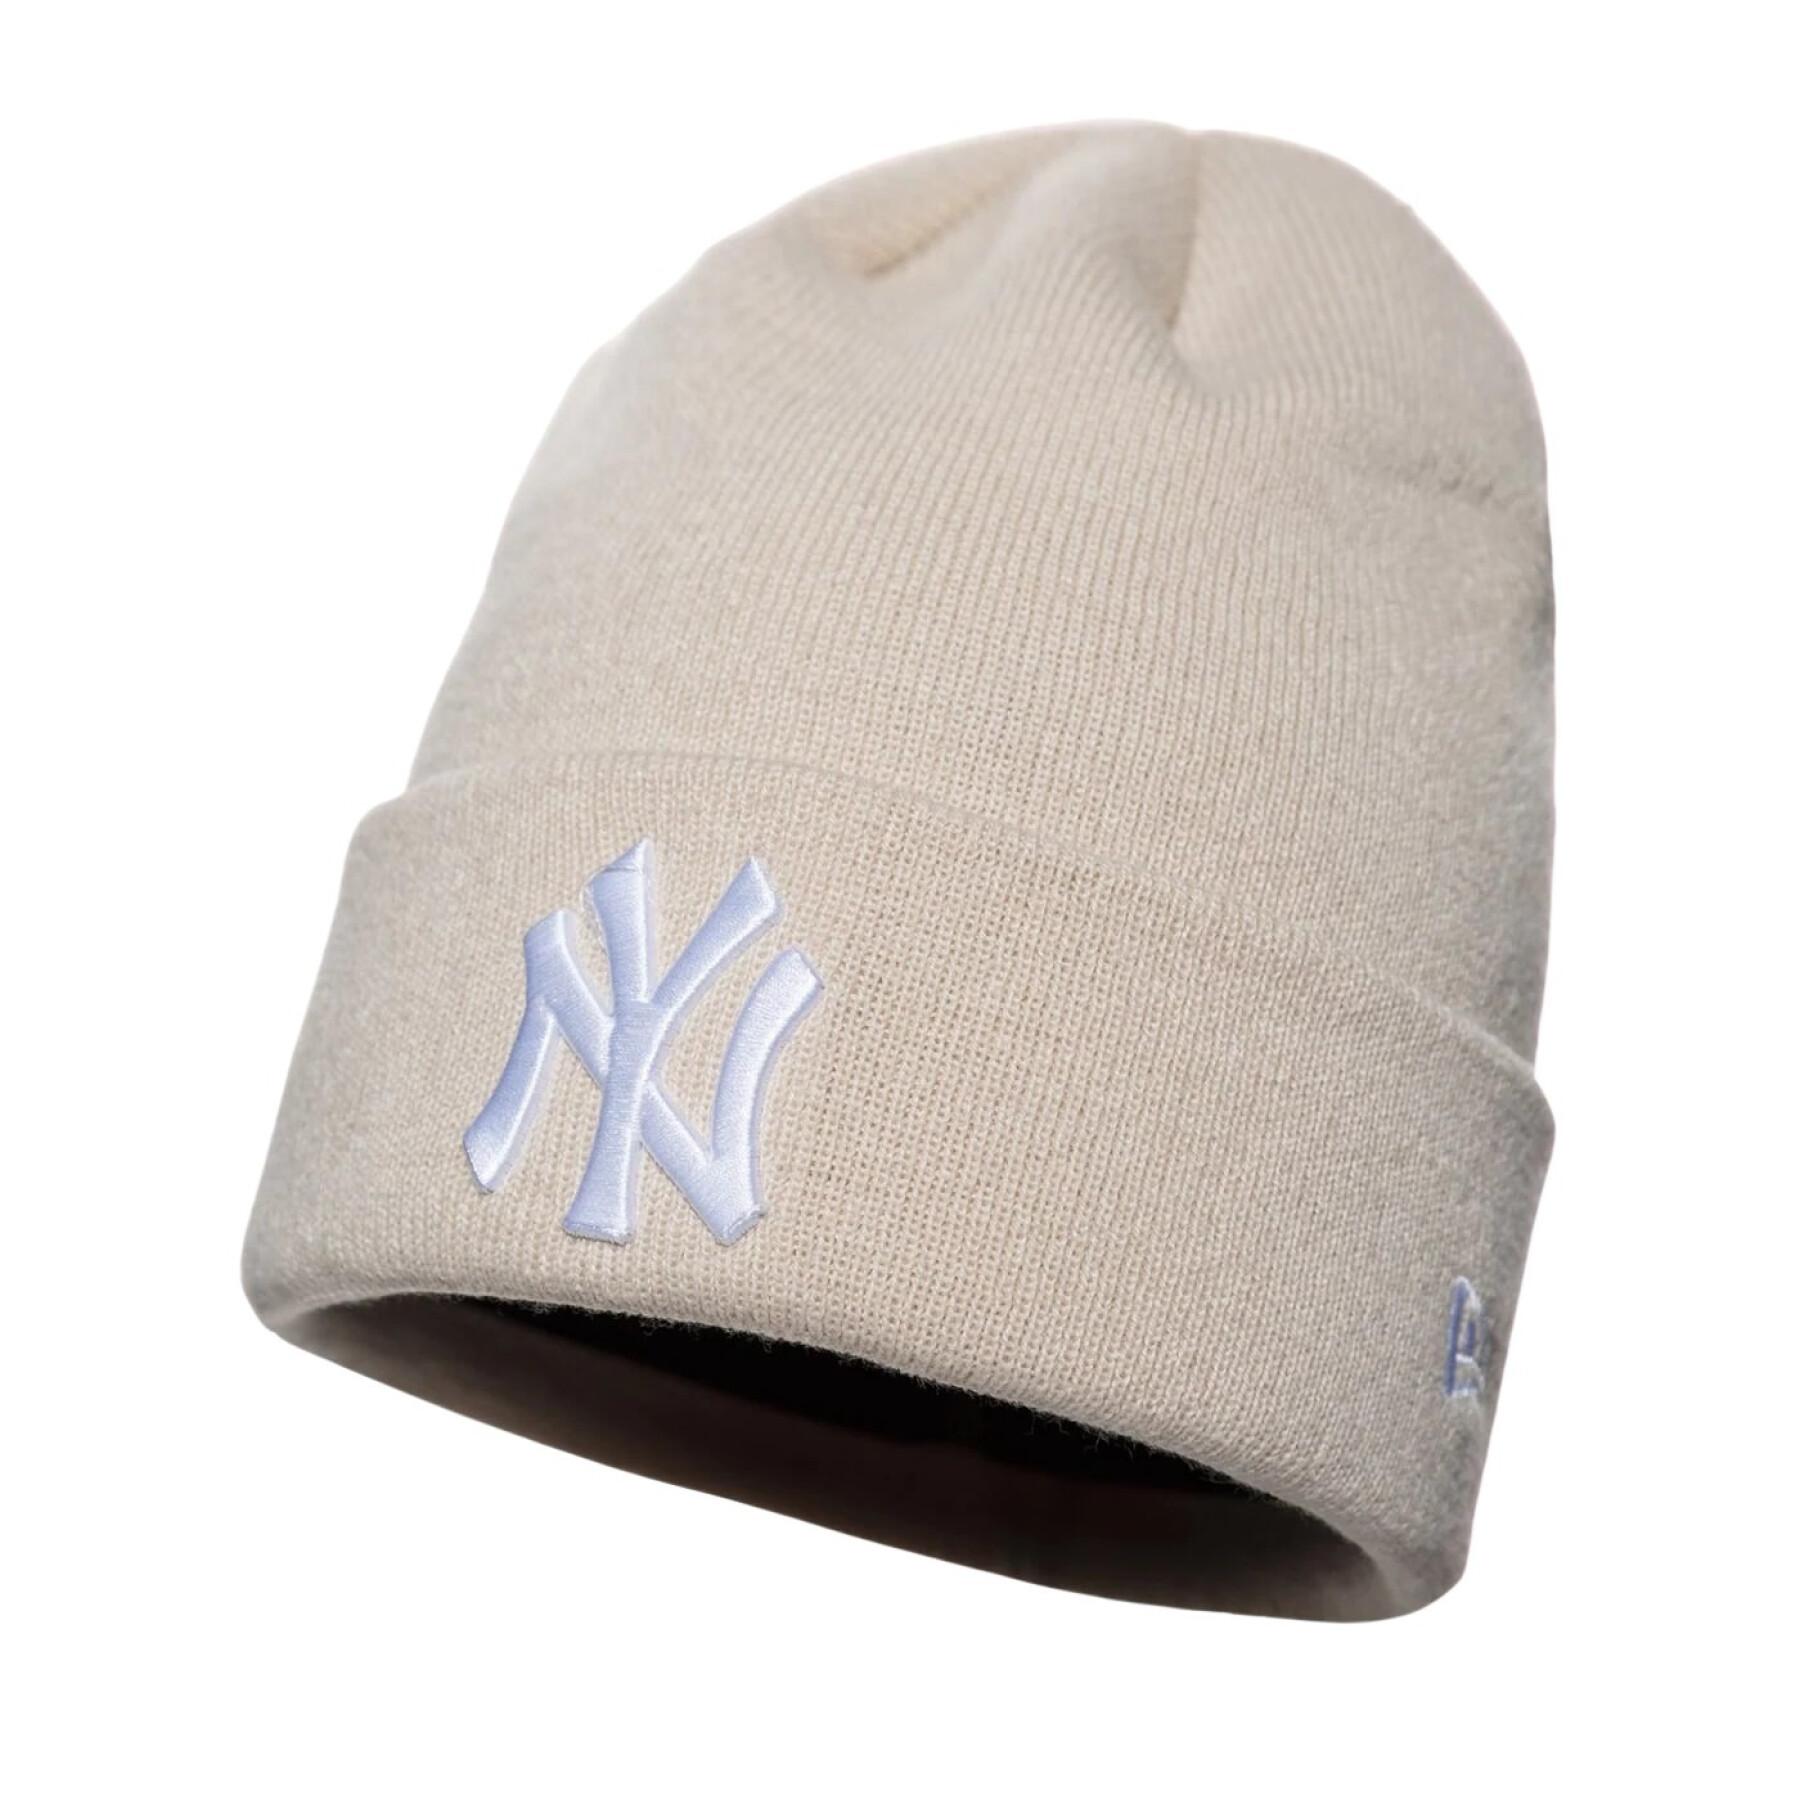 Women's hat New Era New York Yankees